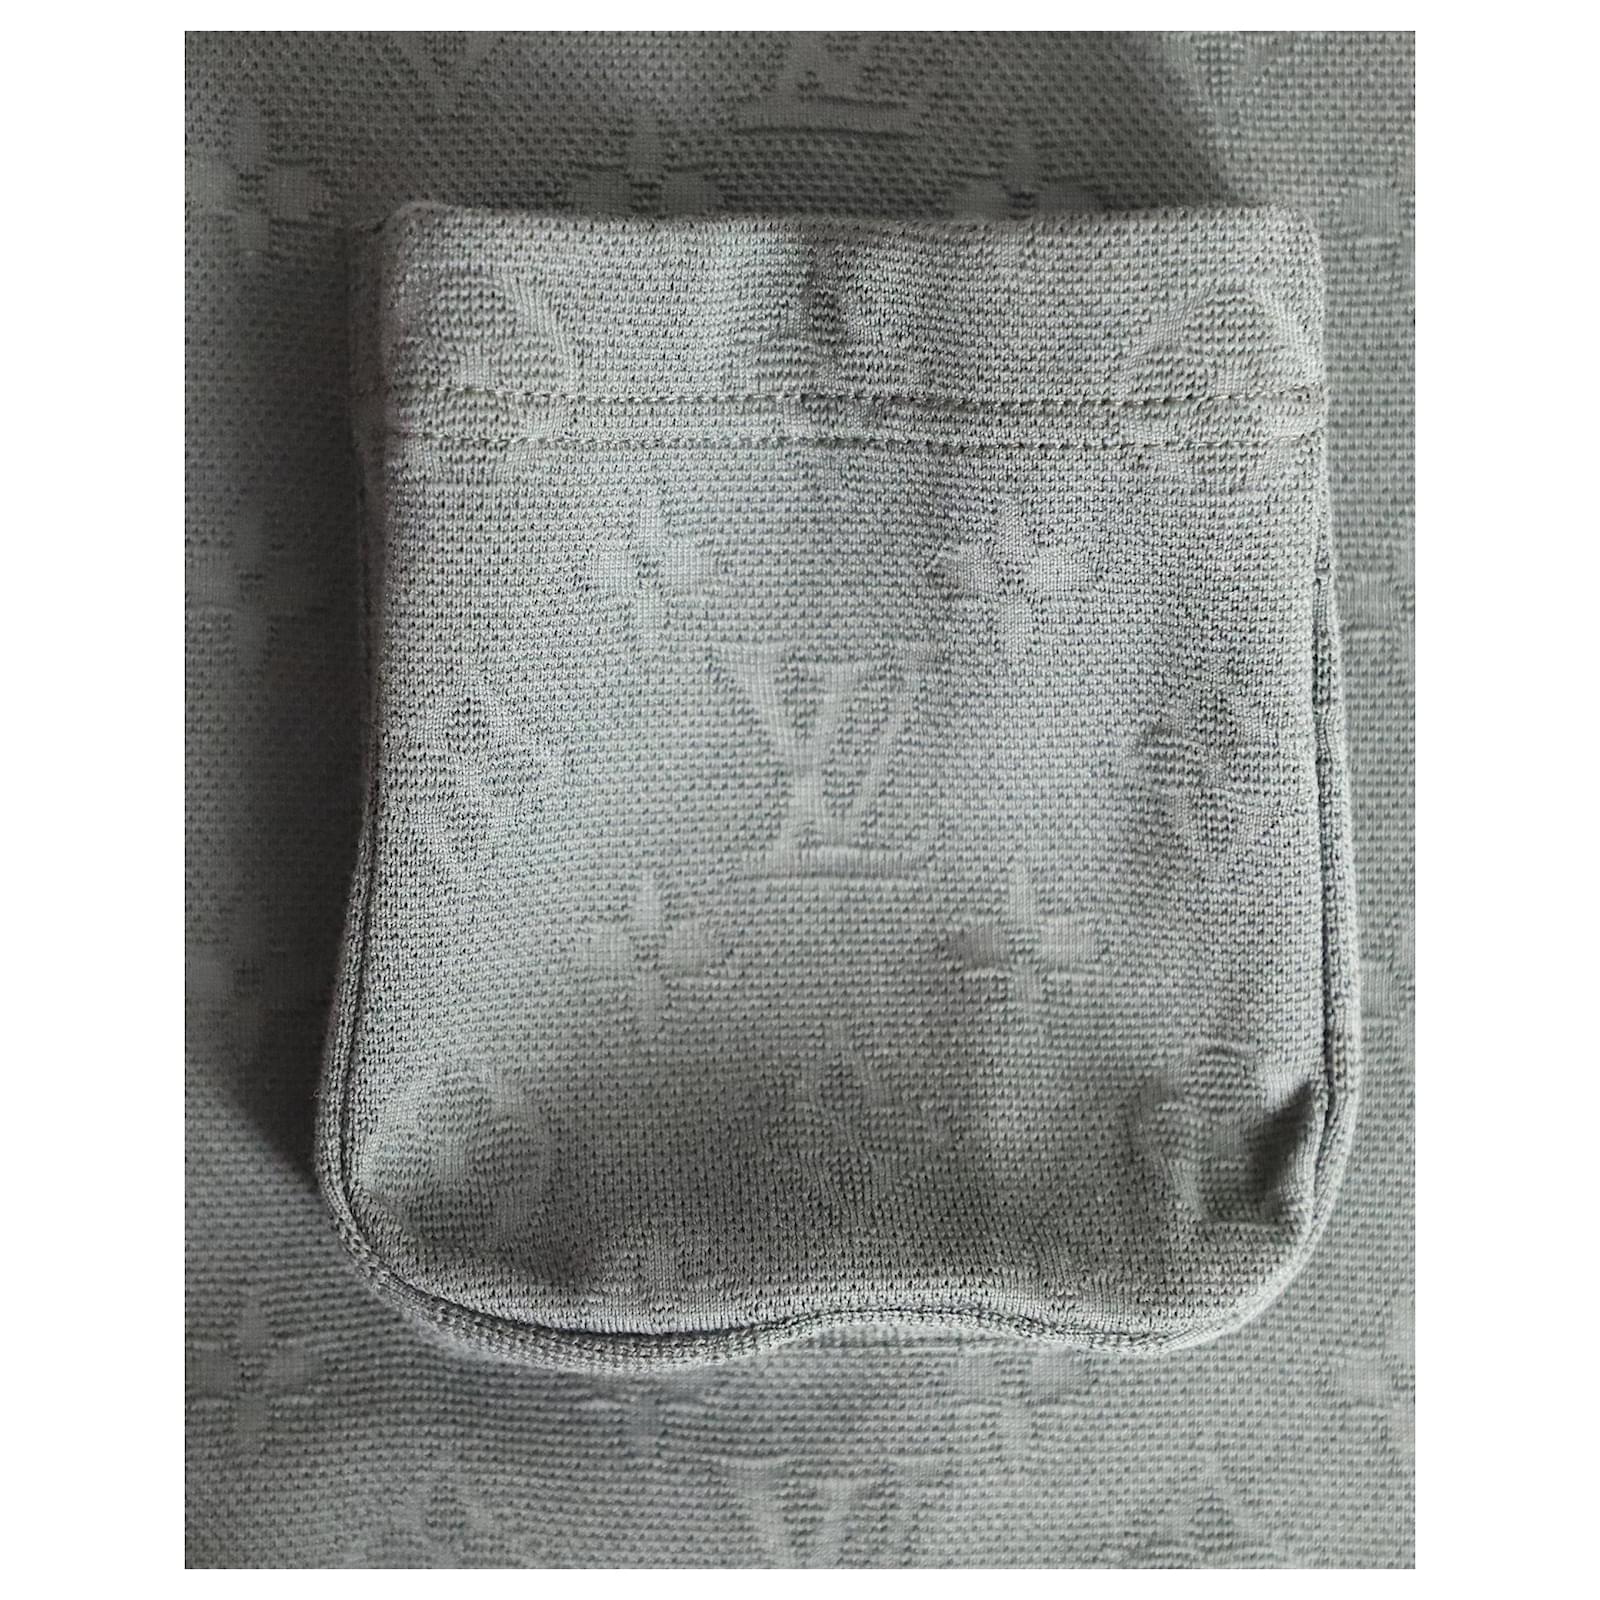 Louis Vuitton Signature 3D Pocket Monogram T-Shirt BLACK. Size L0